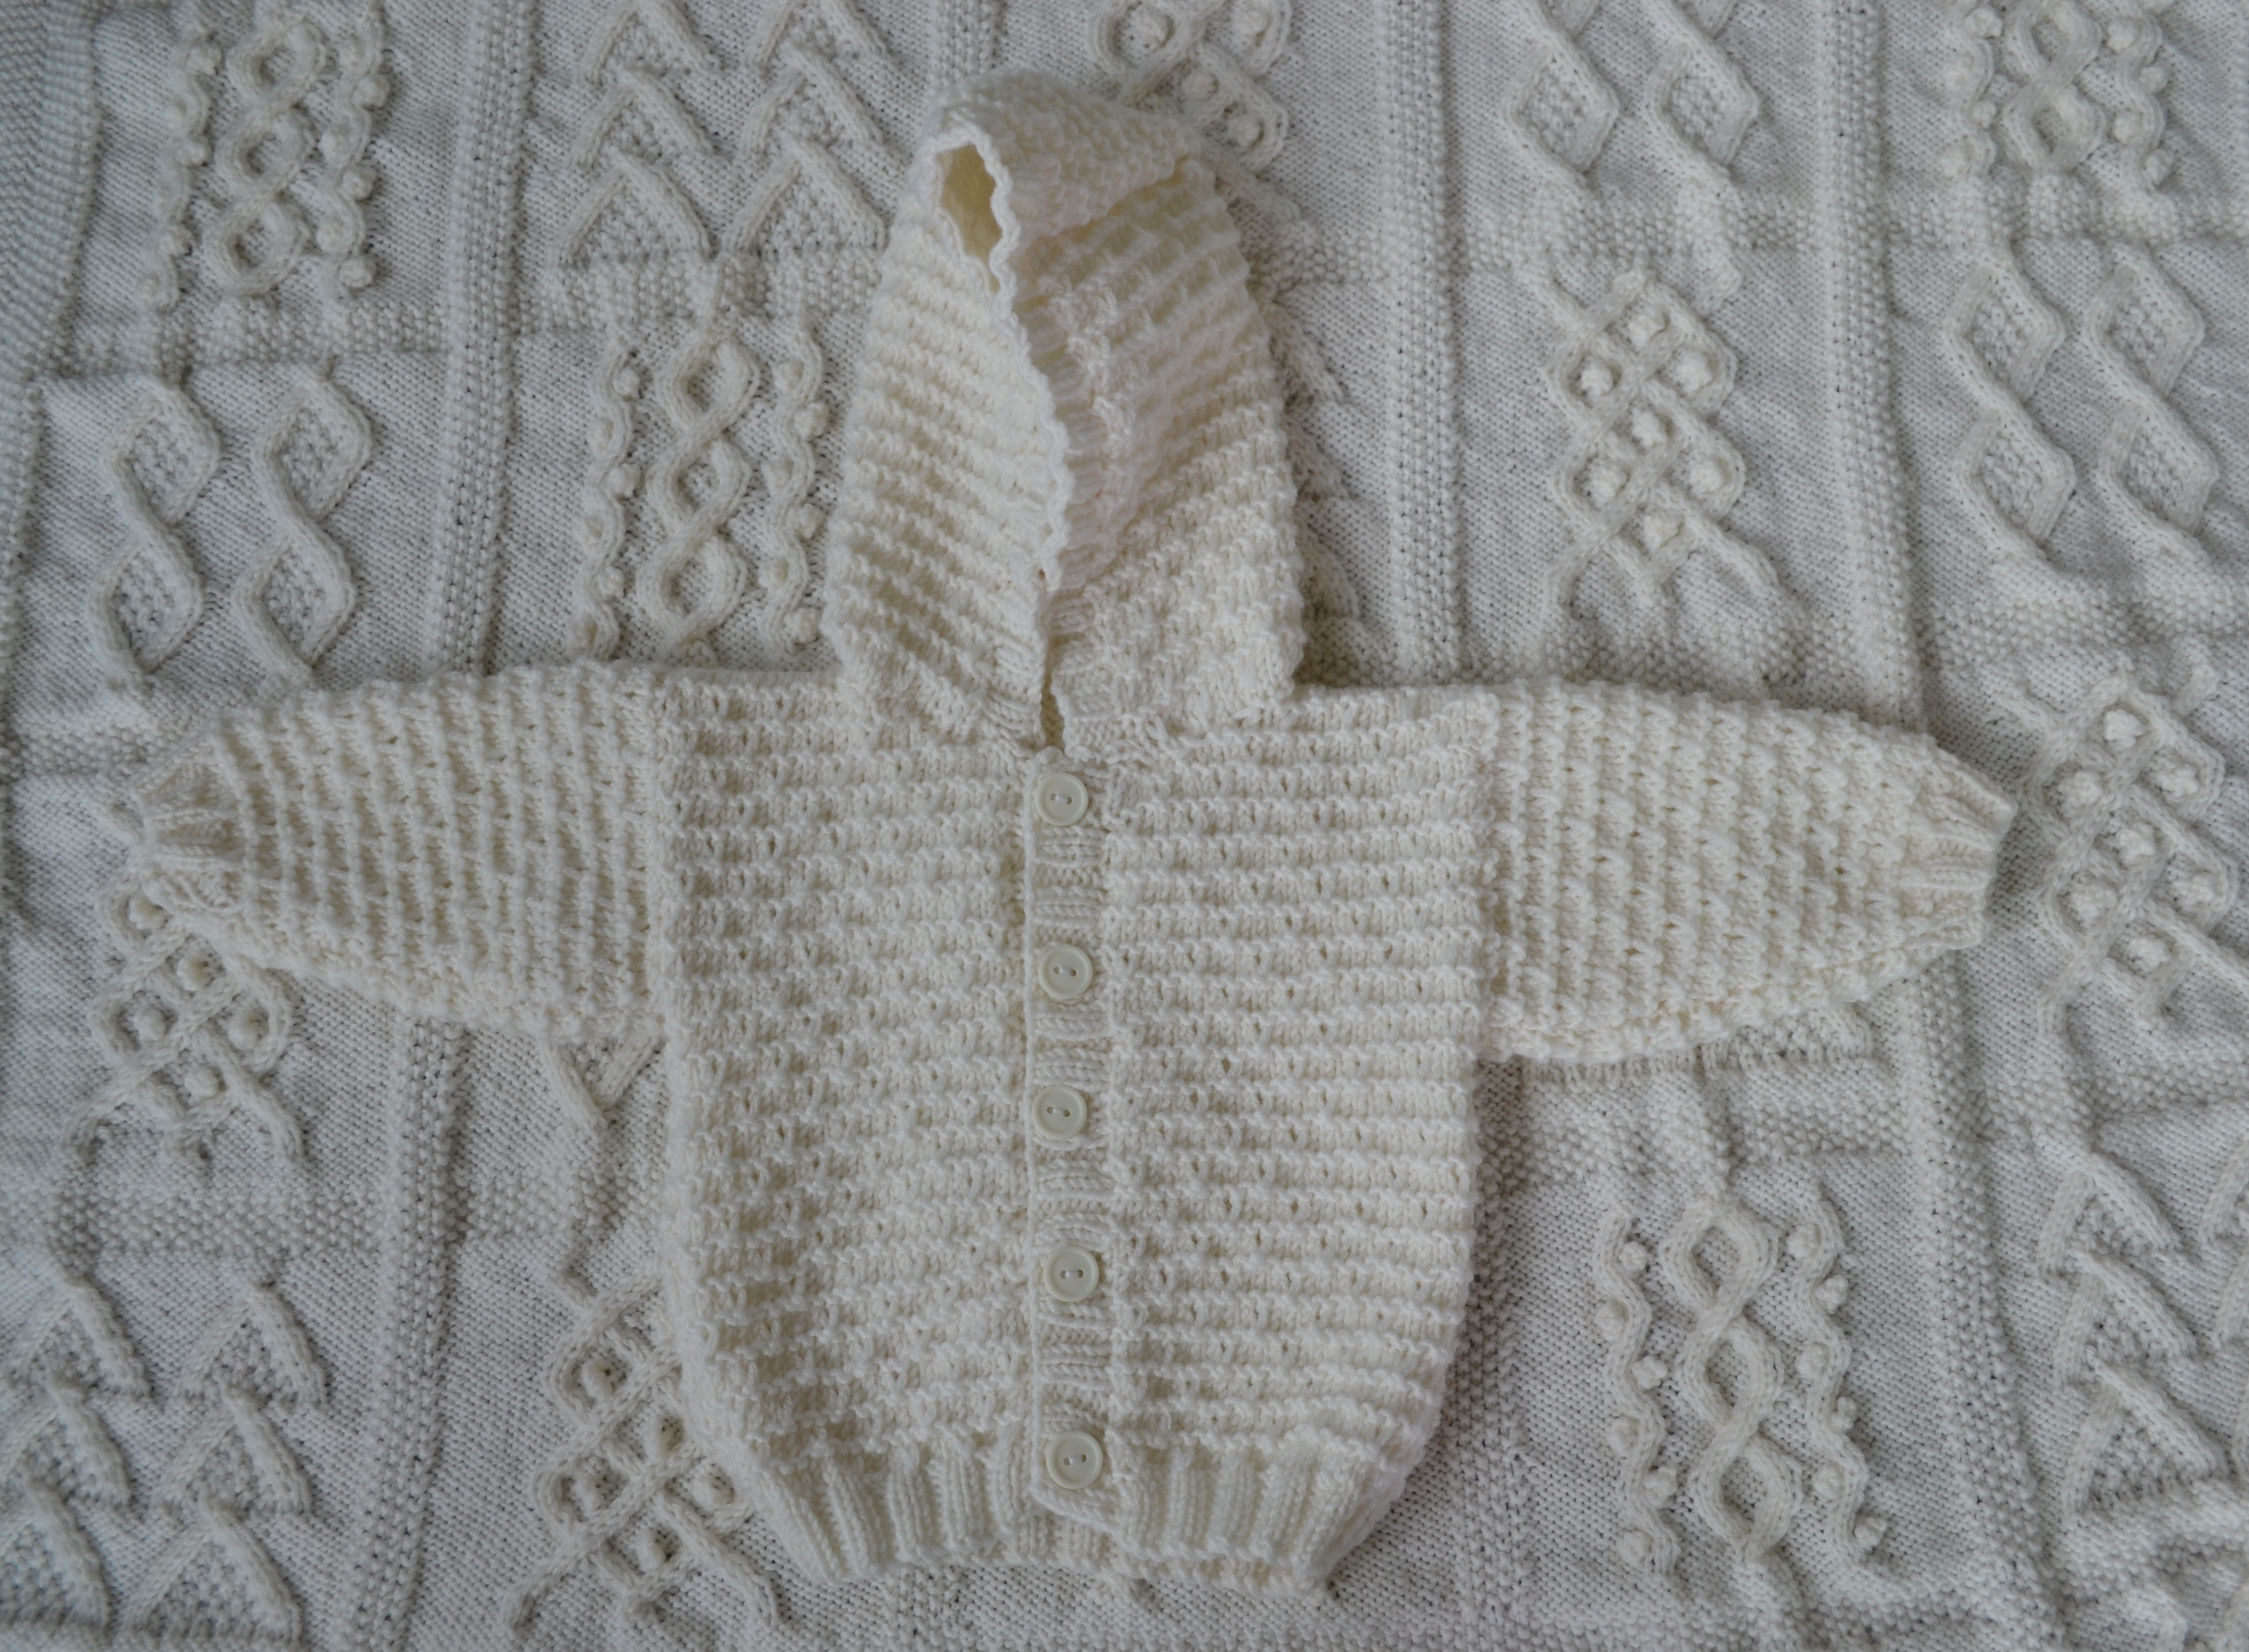 Baby Hoodie Knitting Pattern Free Free Vintage Patons Ba Knitting Patterns